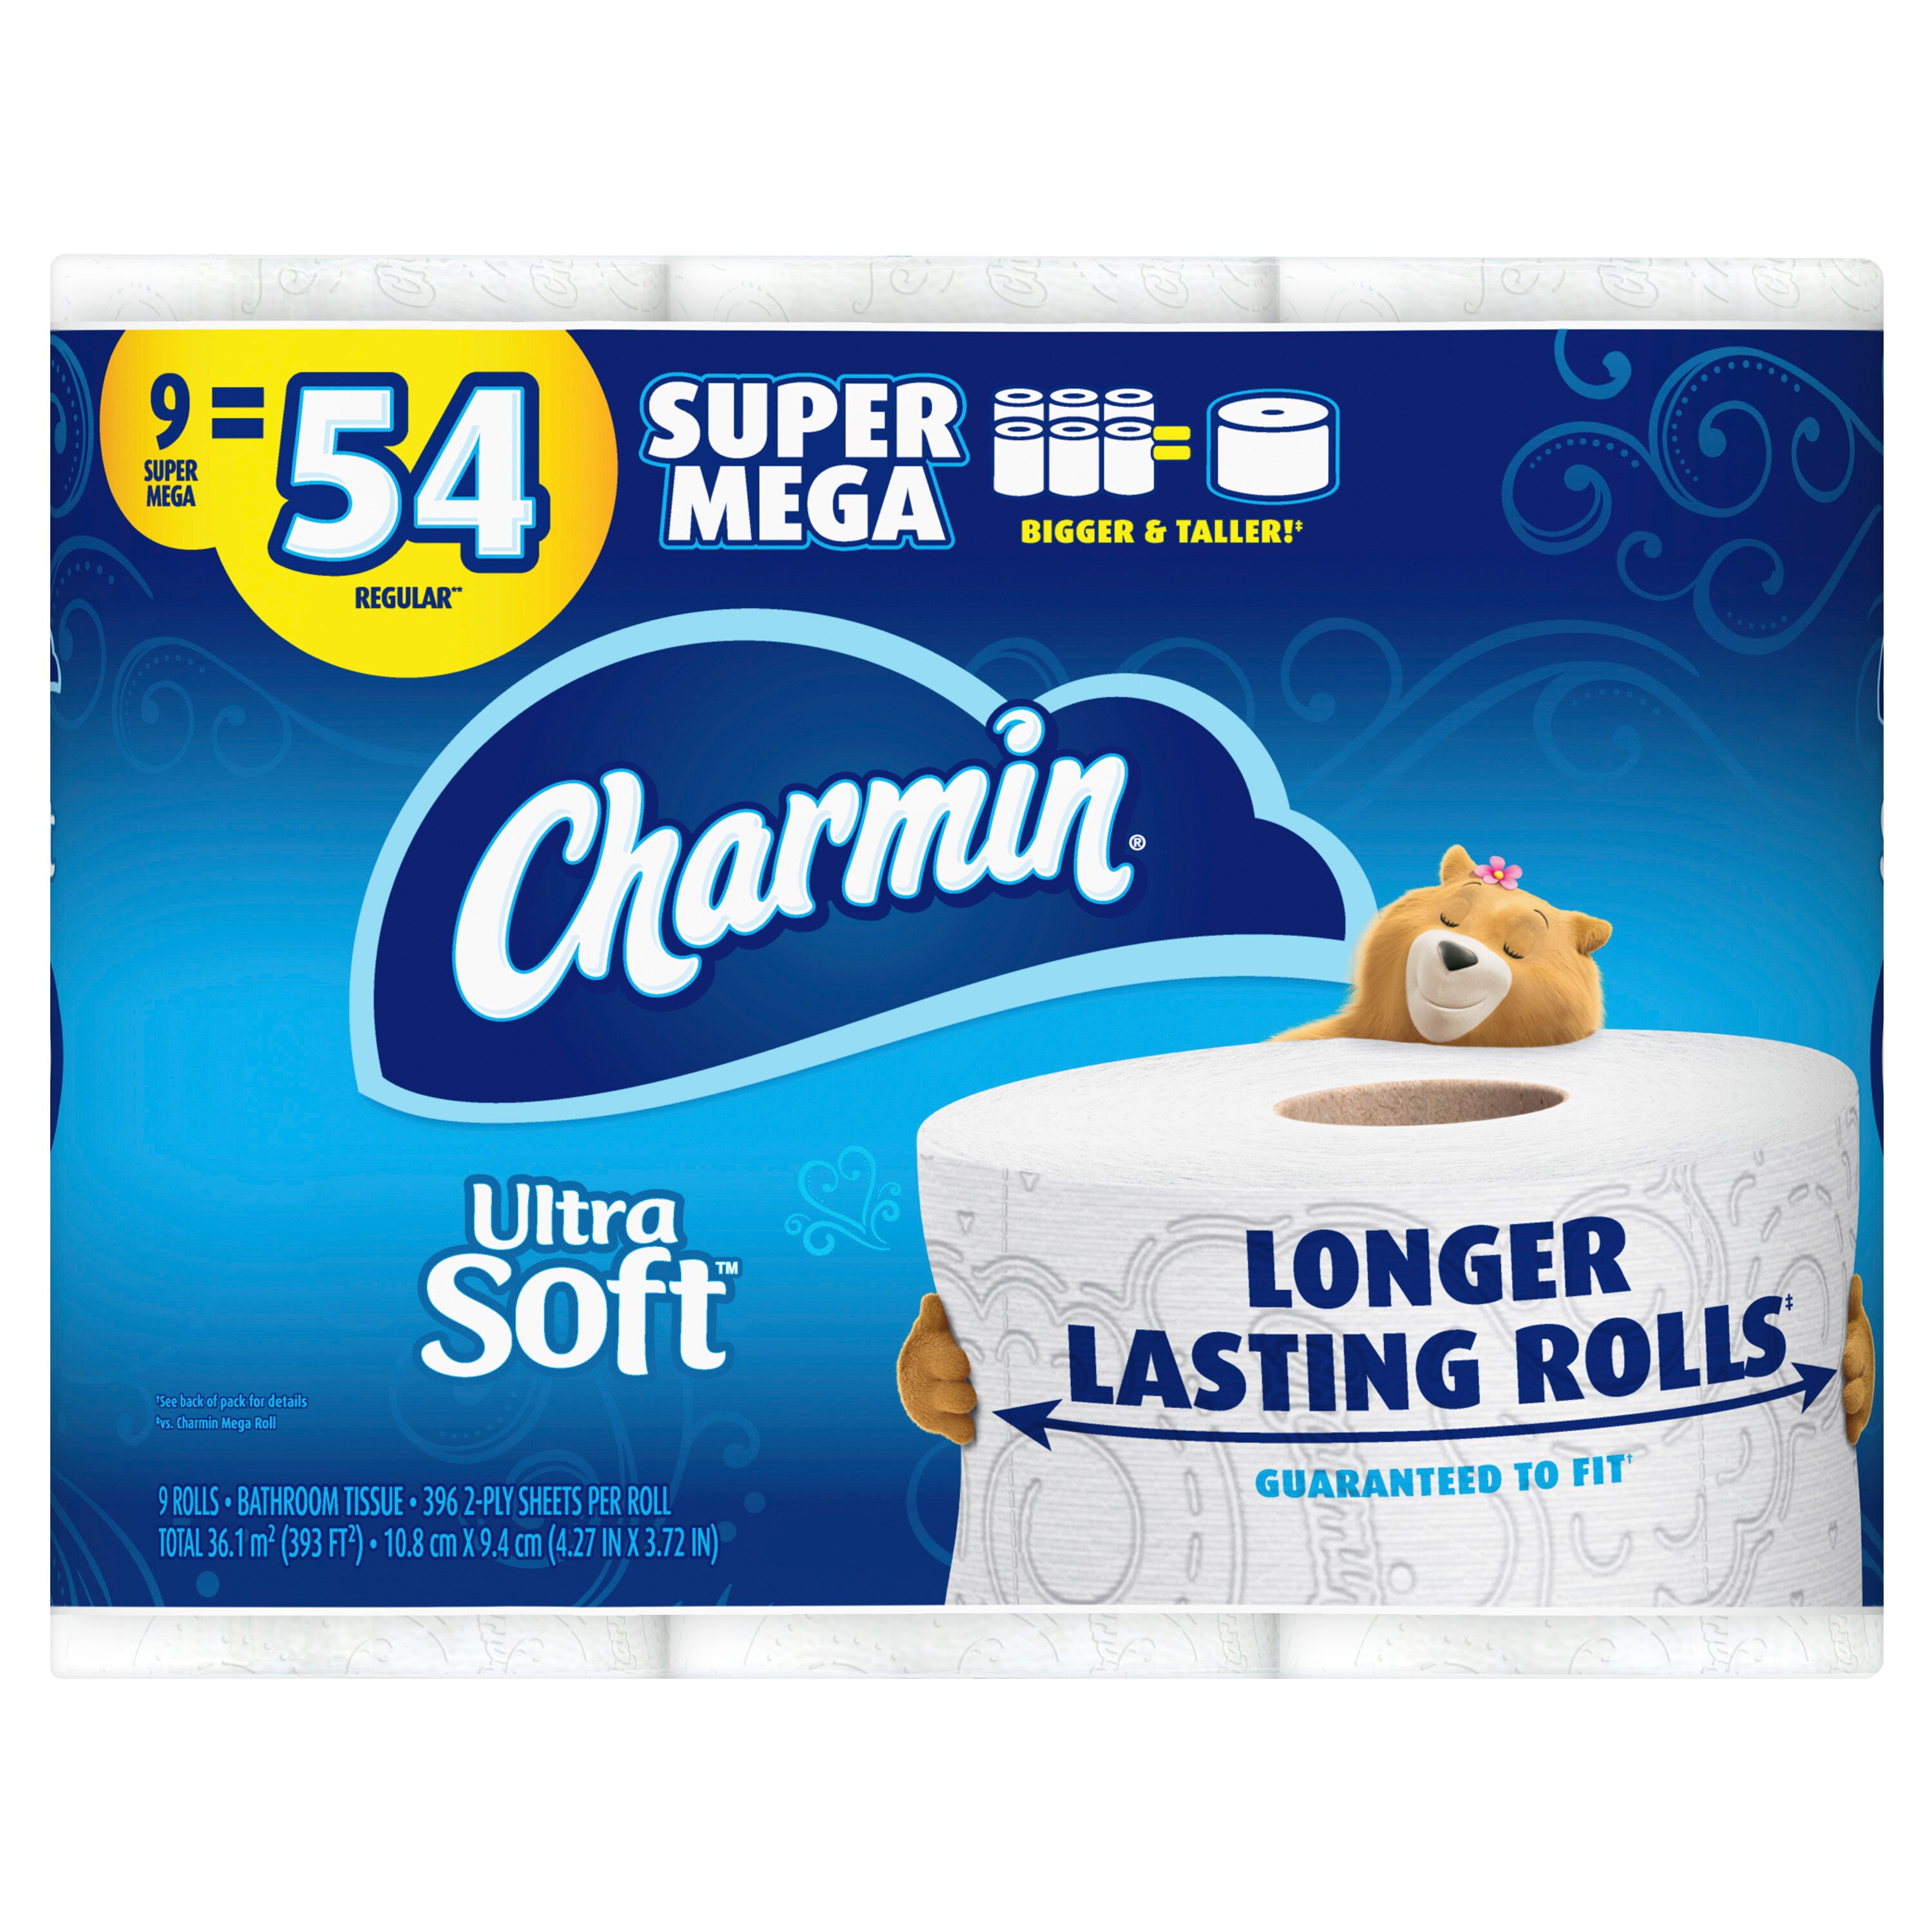 Charmin Ultra Soft Toilet Paper 9 Super Mega Rolls, 396 Sheets Per Roll